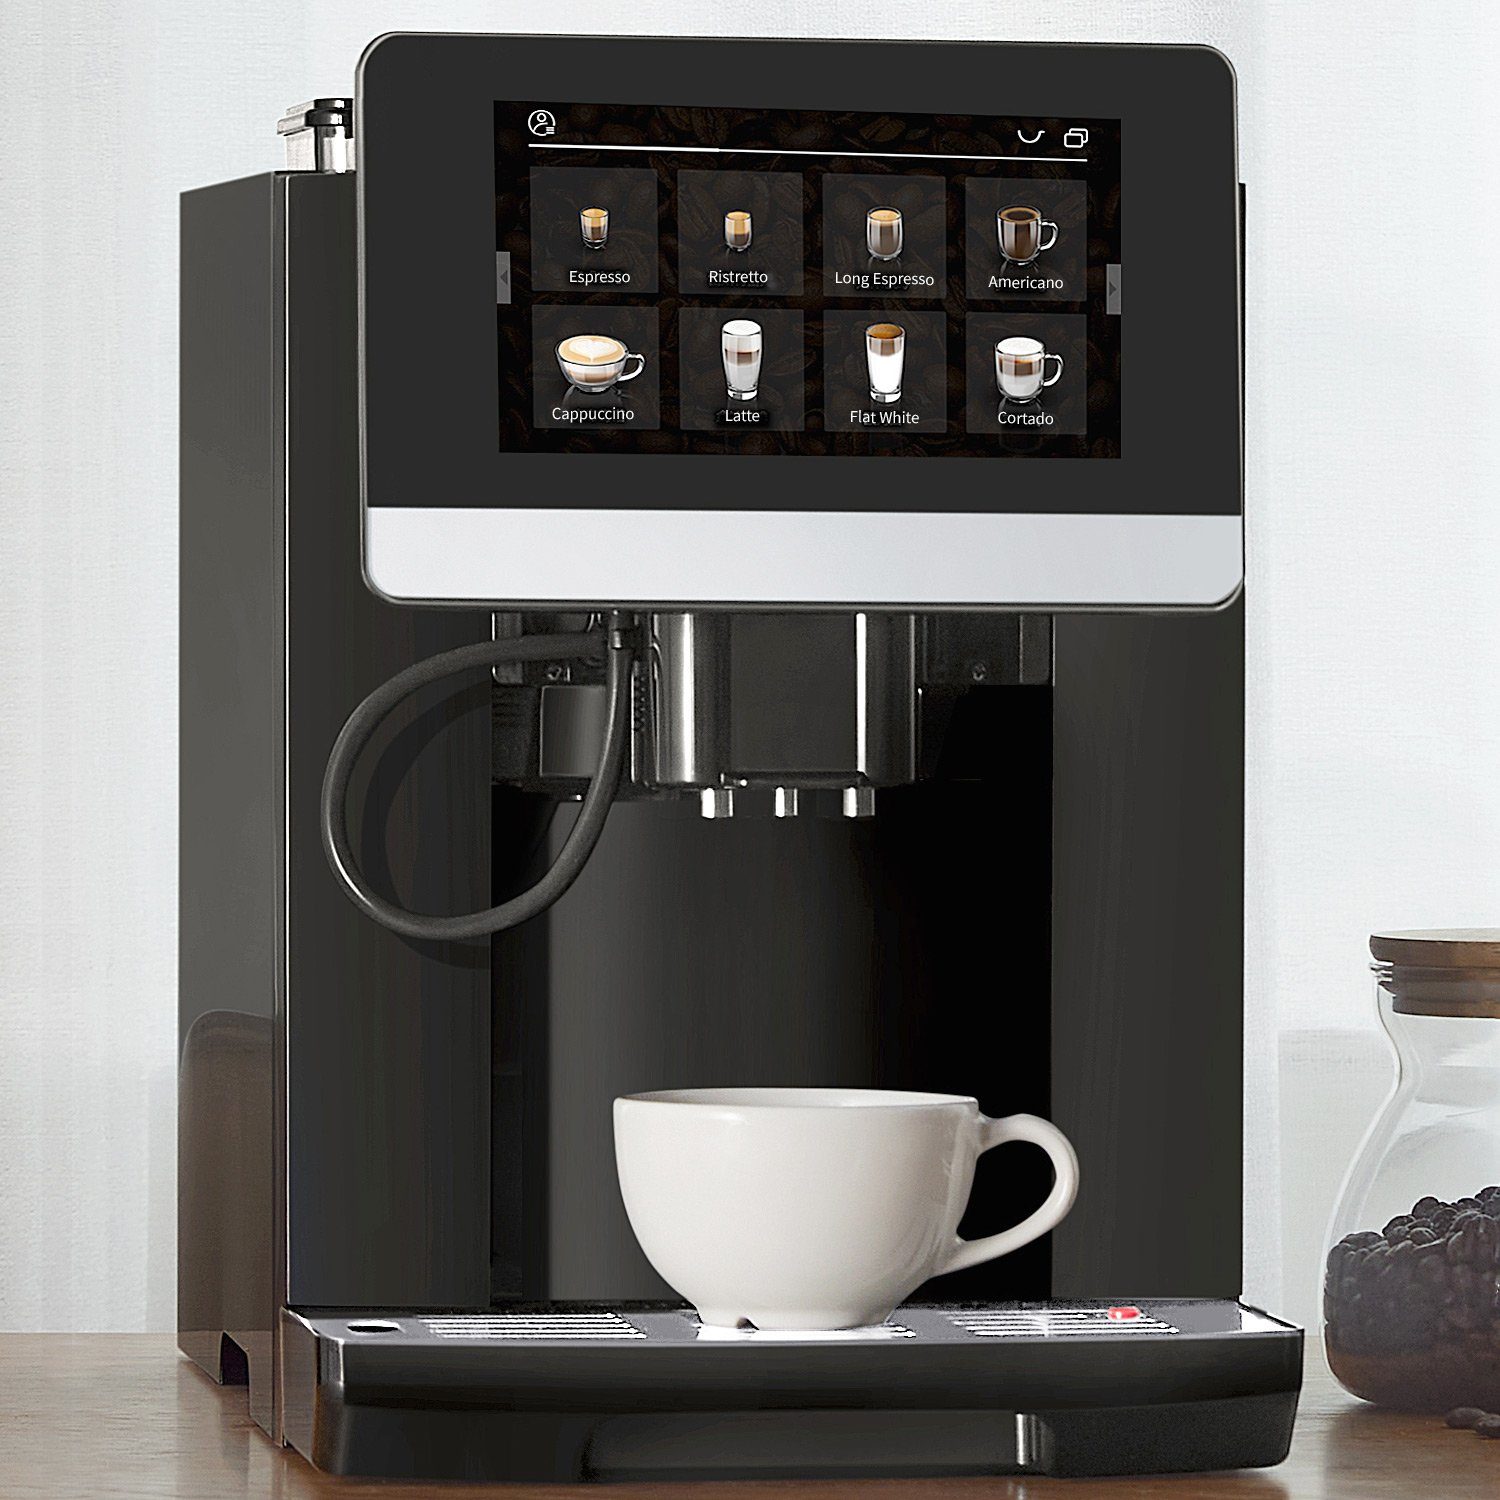 Doppelkesselsystem Anthrazyt Acopino Kaffee-Rezeptbuch, Kaffeevollautomat Barletta,